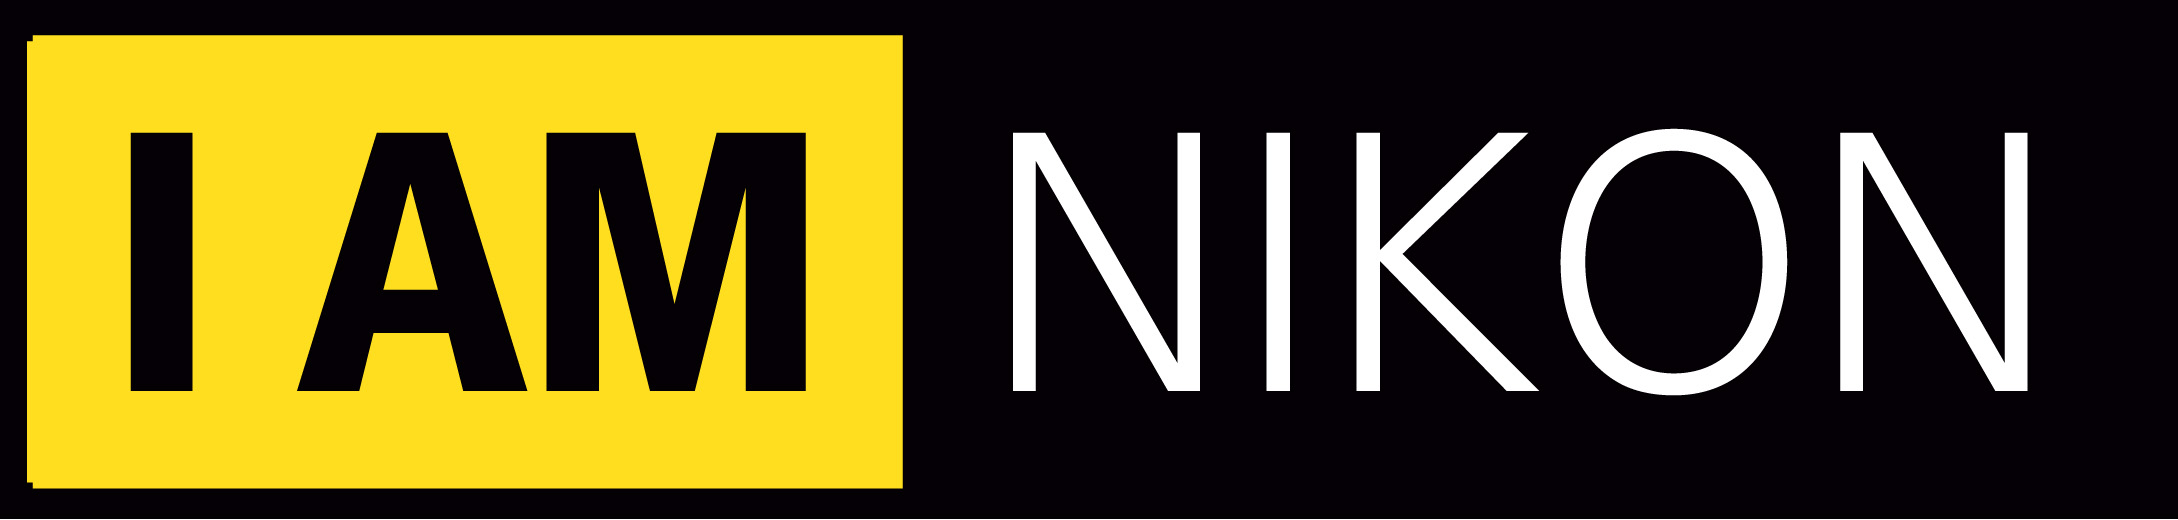 nikon logo png